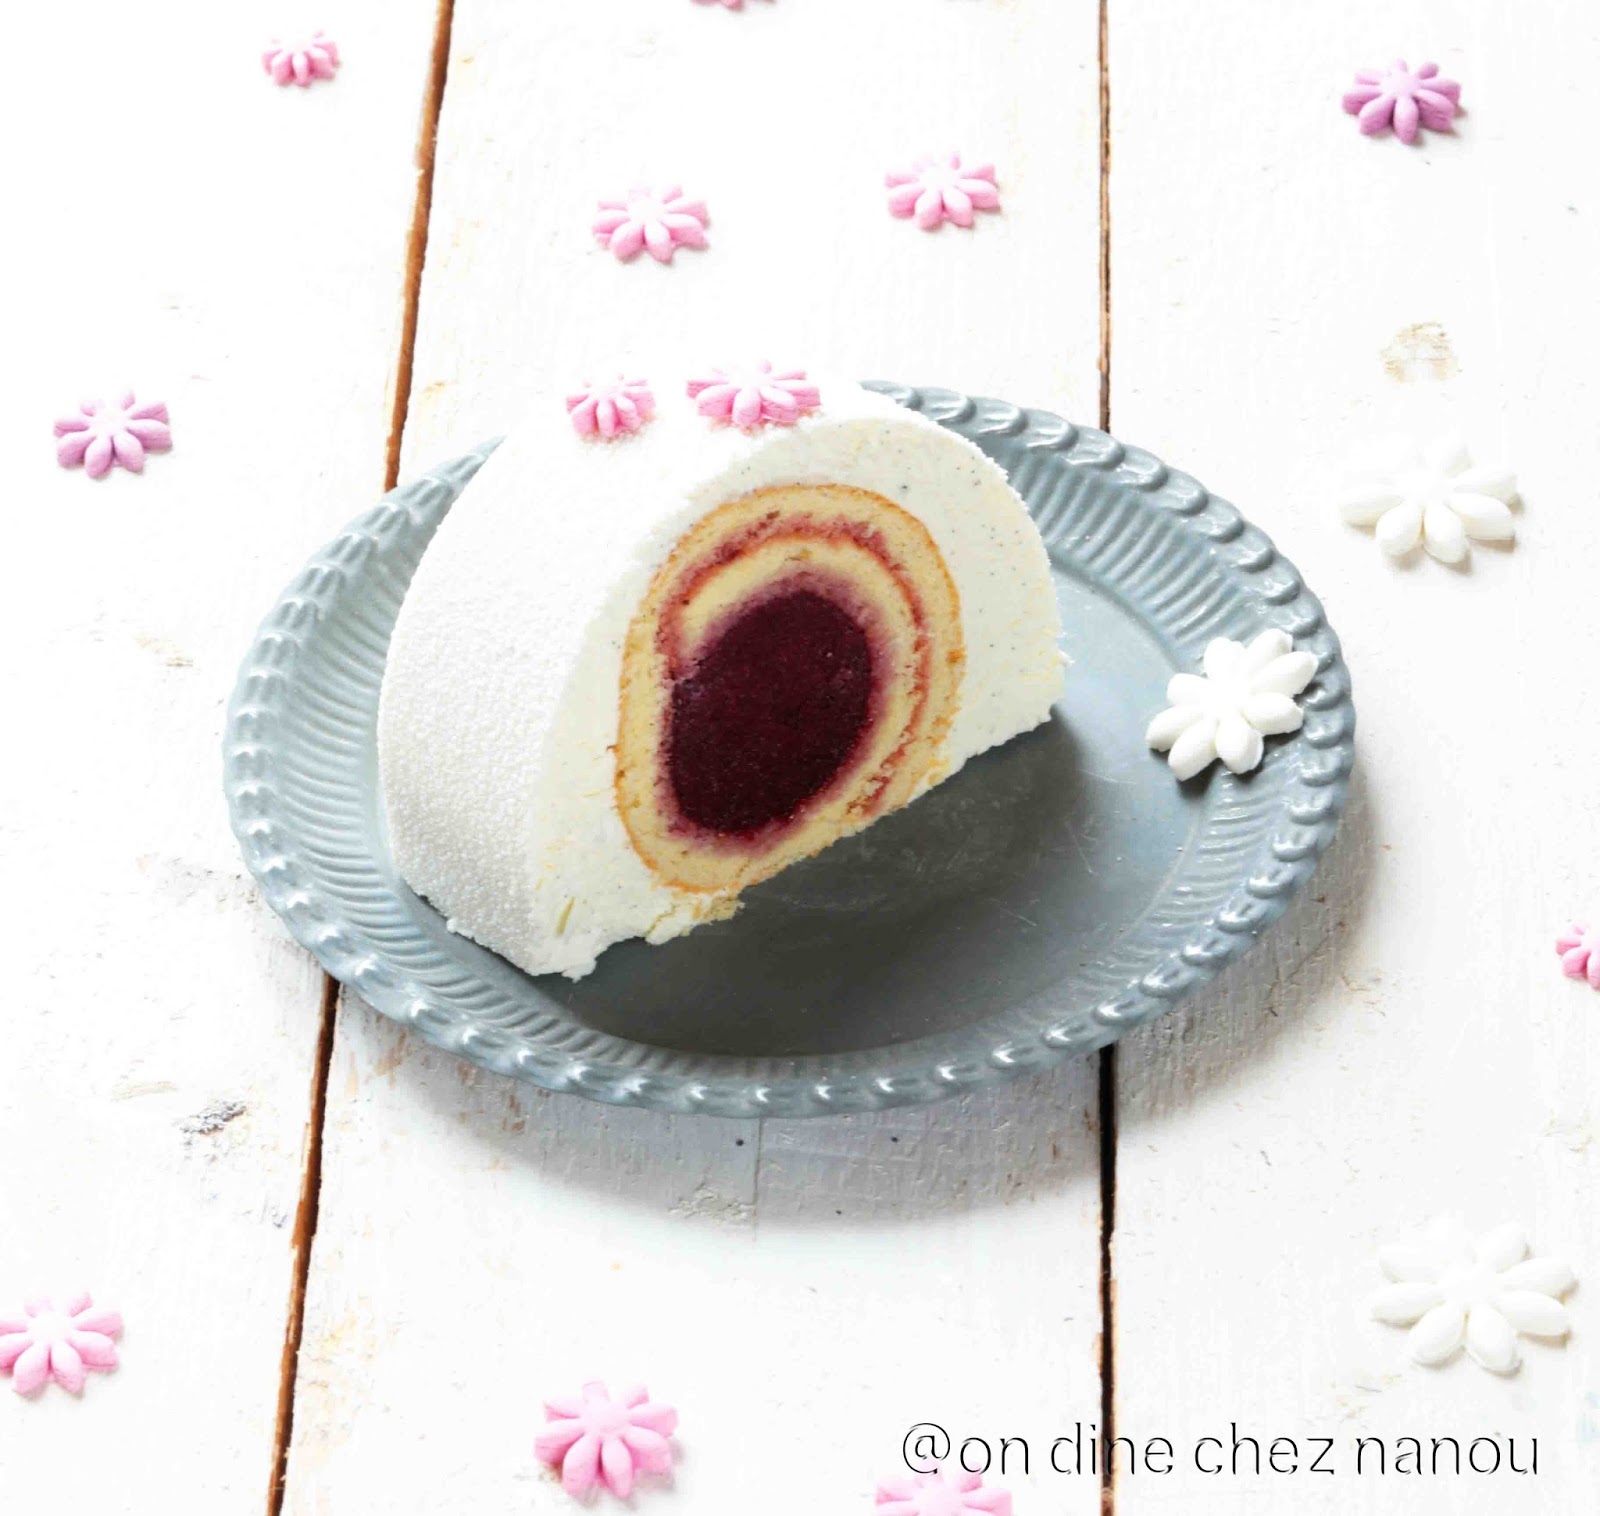 Bûche de Noël vanille gâteau roulé aux fruits rouges / On dine chez Nanou